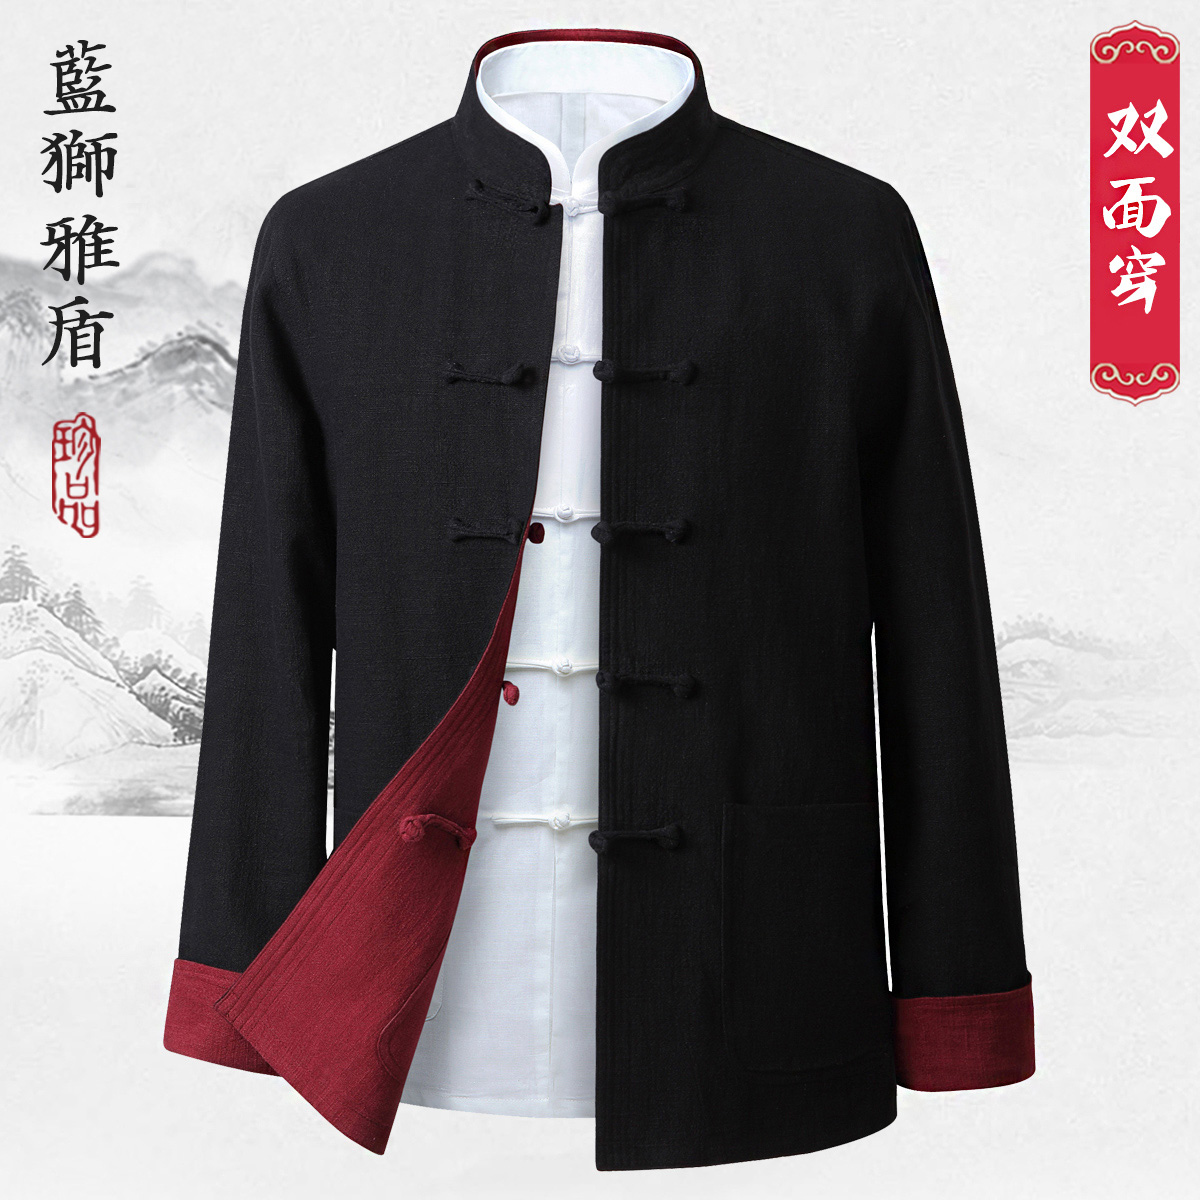 中国风唐装男亚麻外套中年中式汉服套装中老年人居士服春秋爸爸装